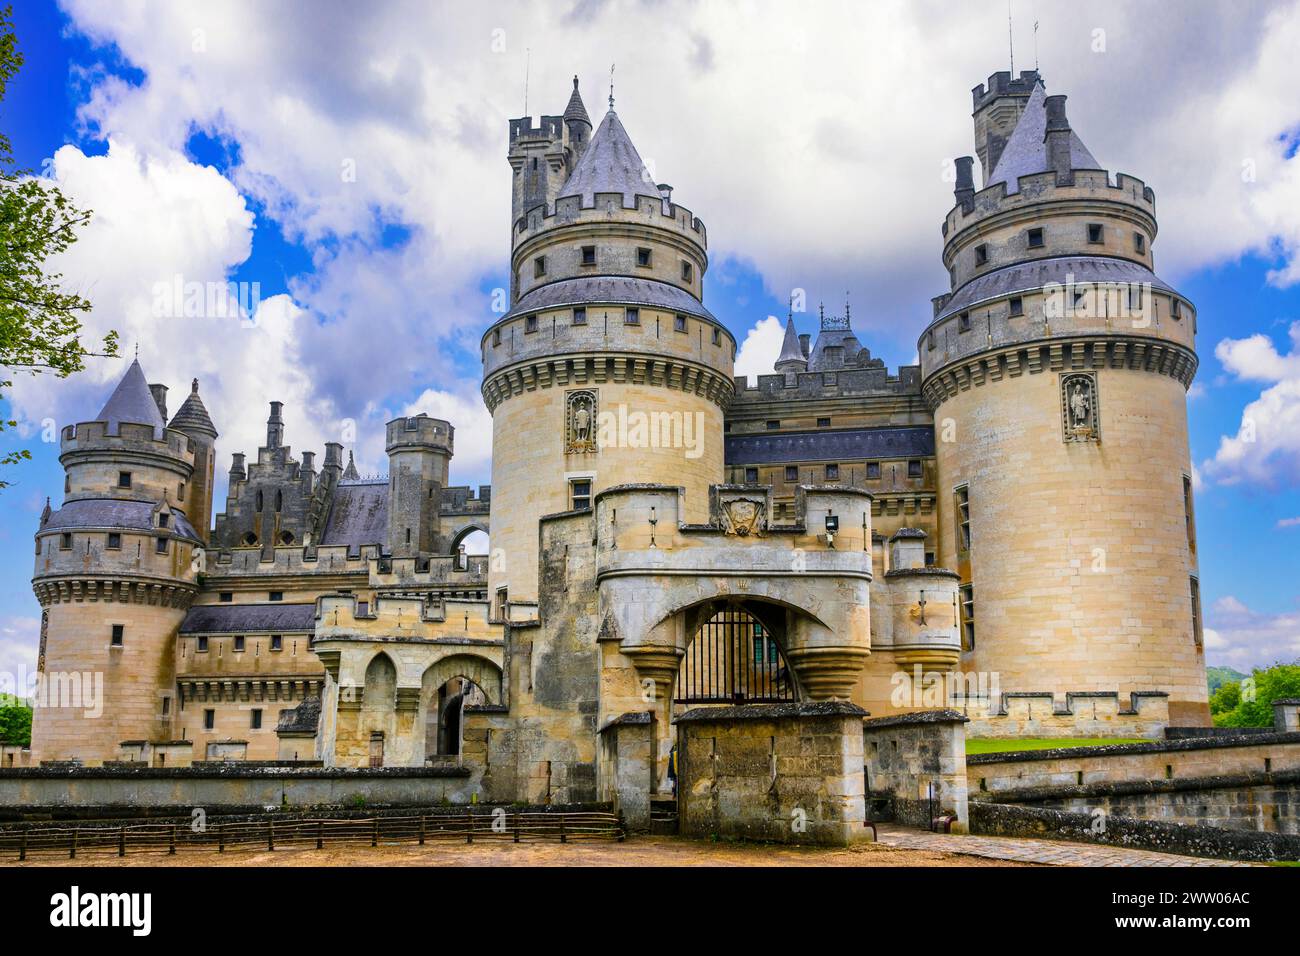 Célèbres châteaux français - impressionnant château médiéval de Pierrefonds. France Banque D'Images